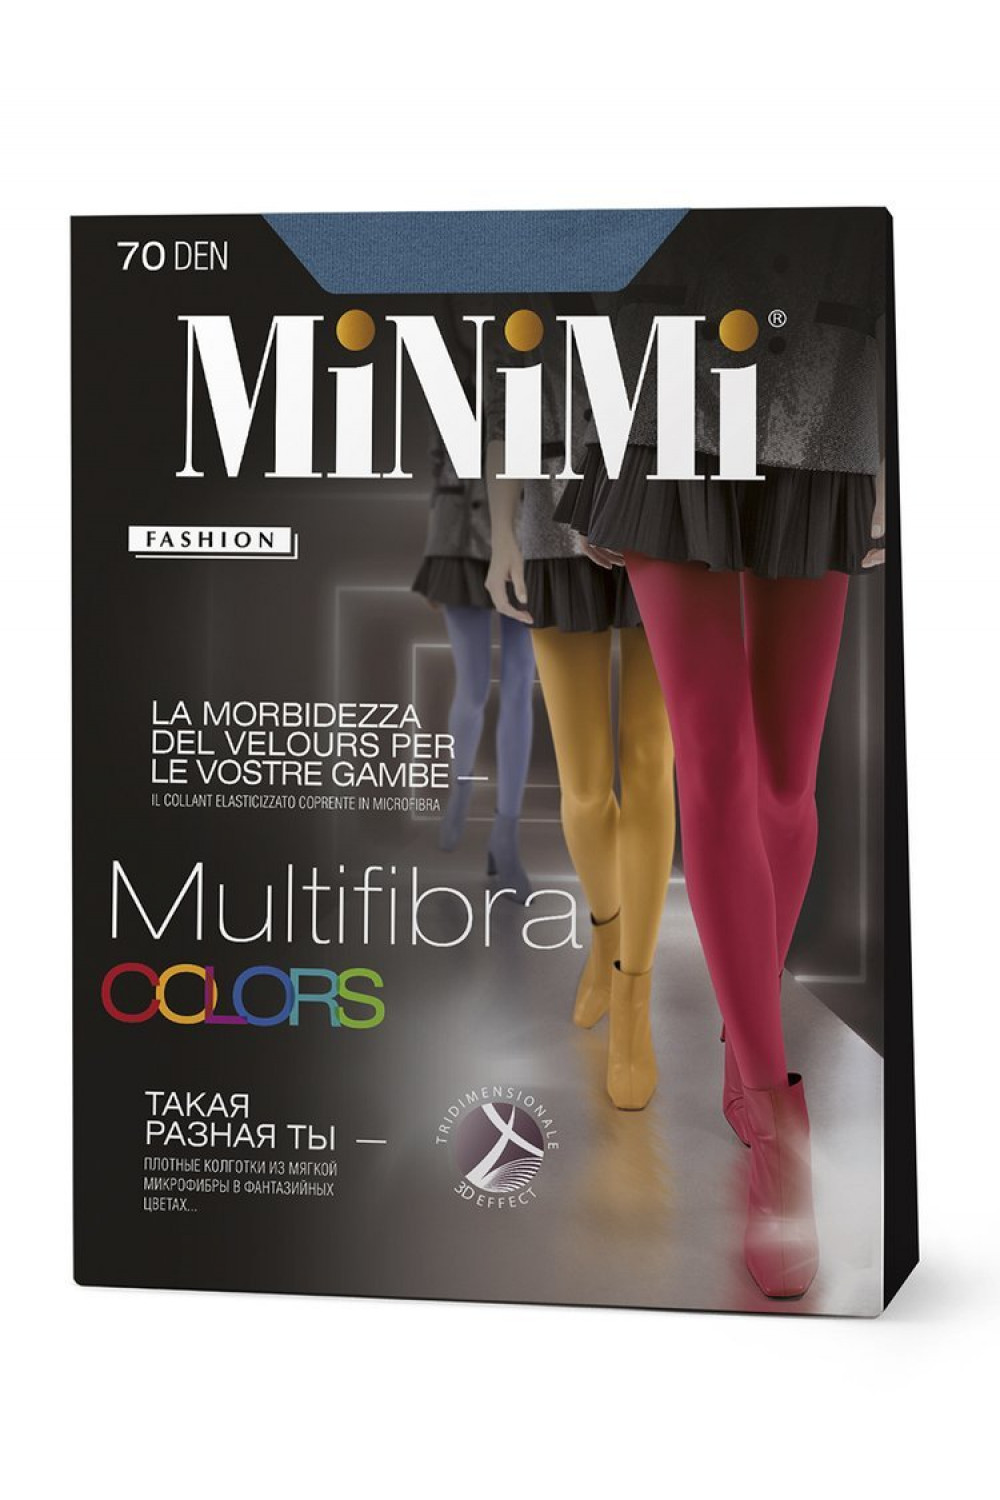 Плотные колготки из мягкой микрофибры Multifibra 70 3D  Color (60/1)***, Minimi